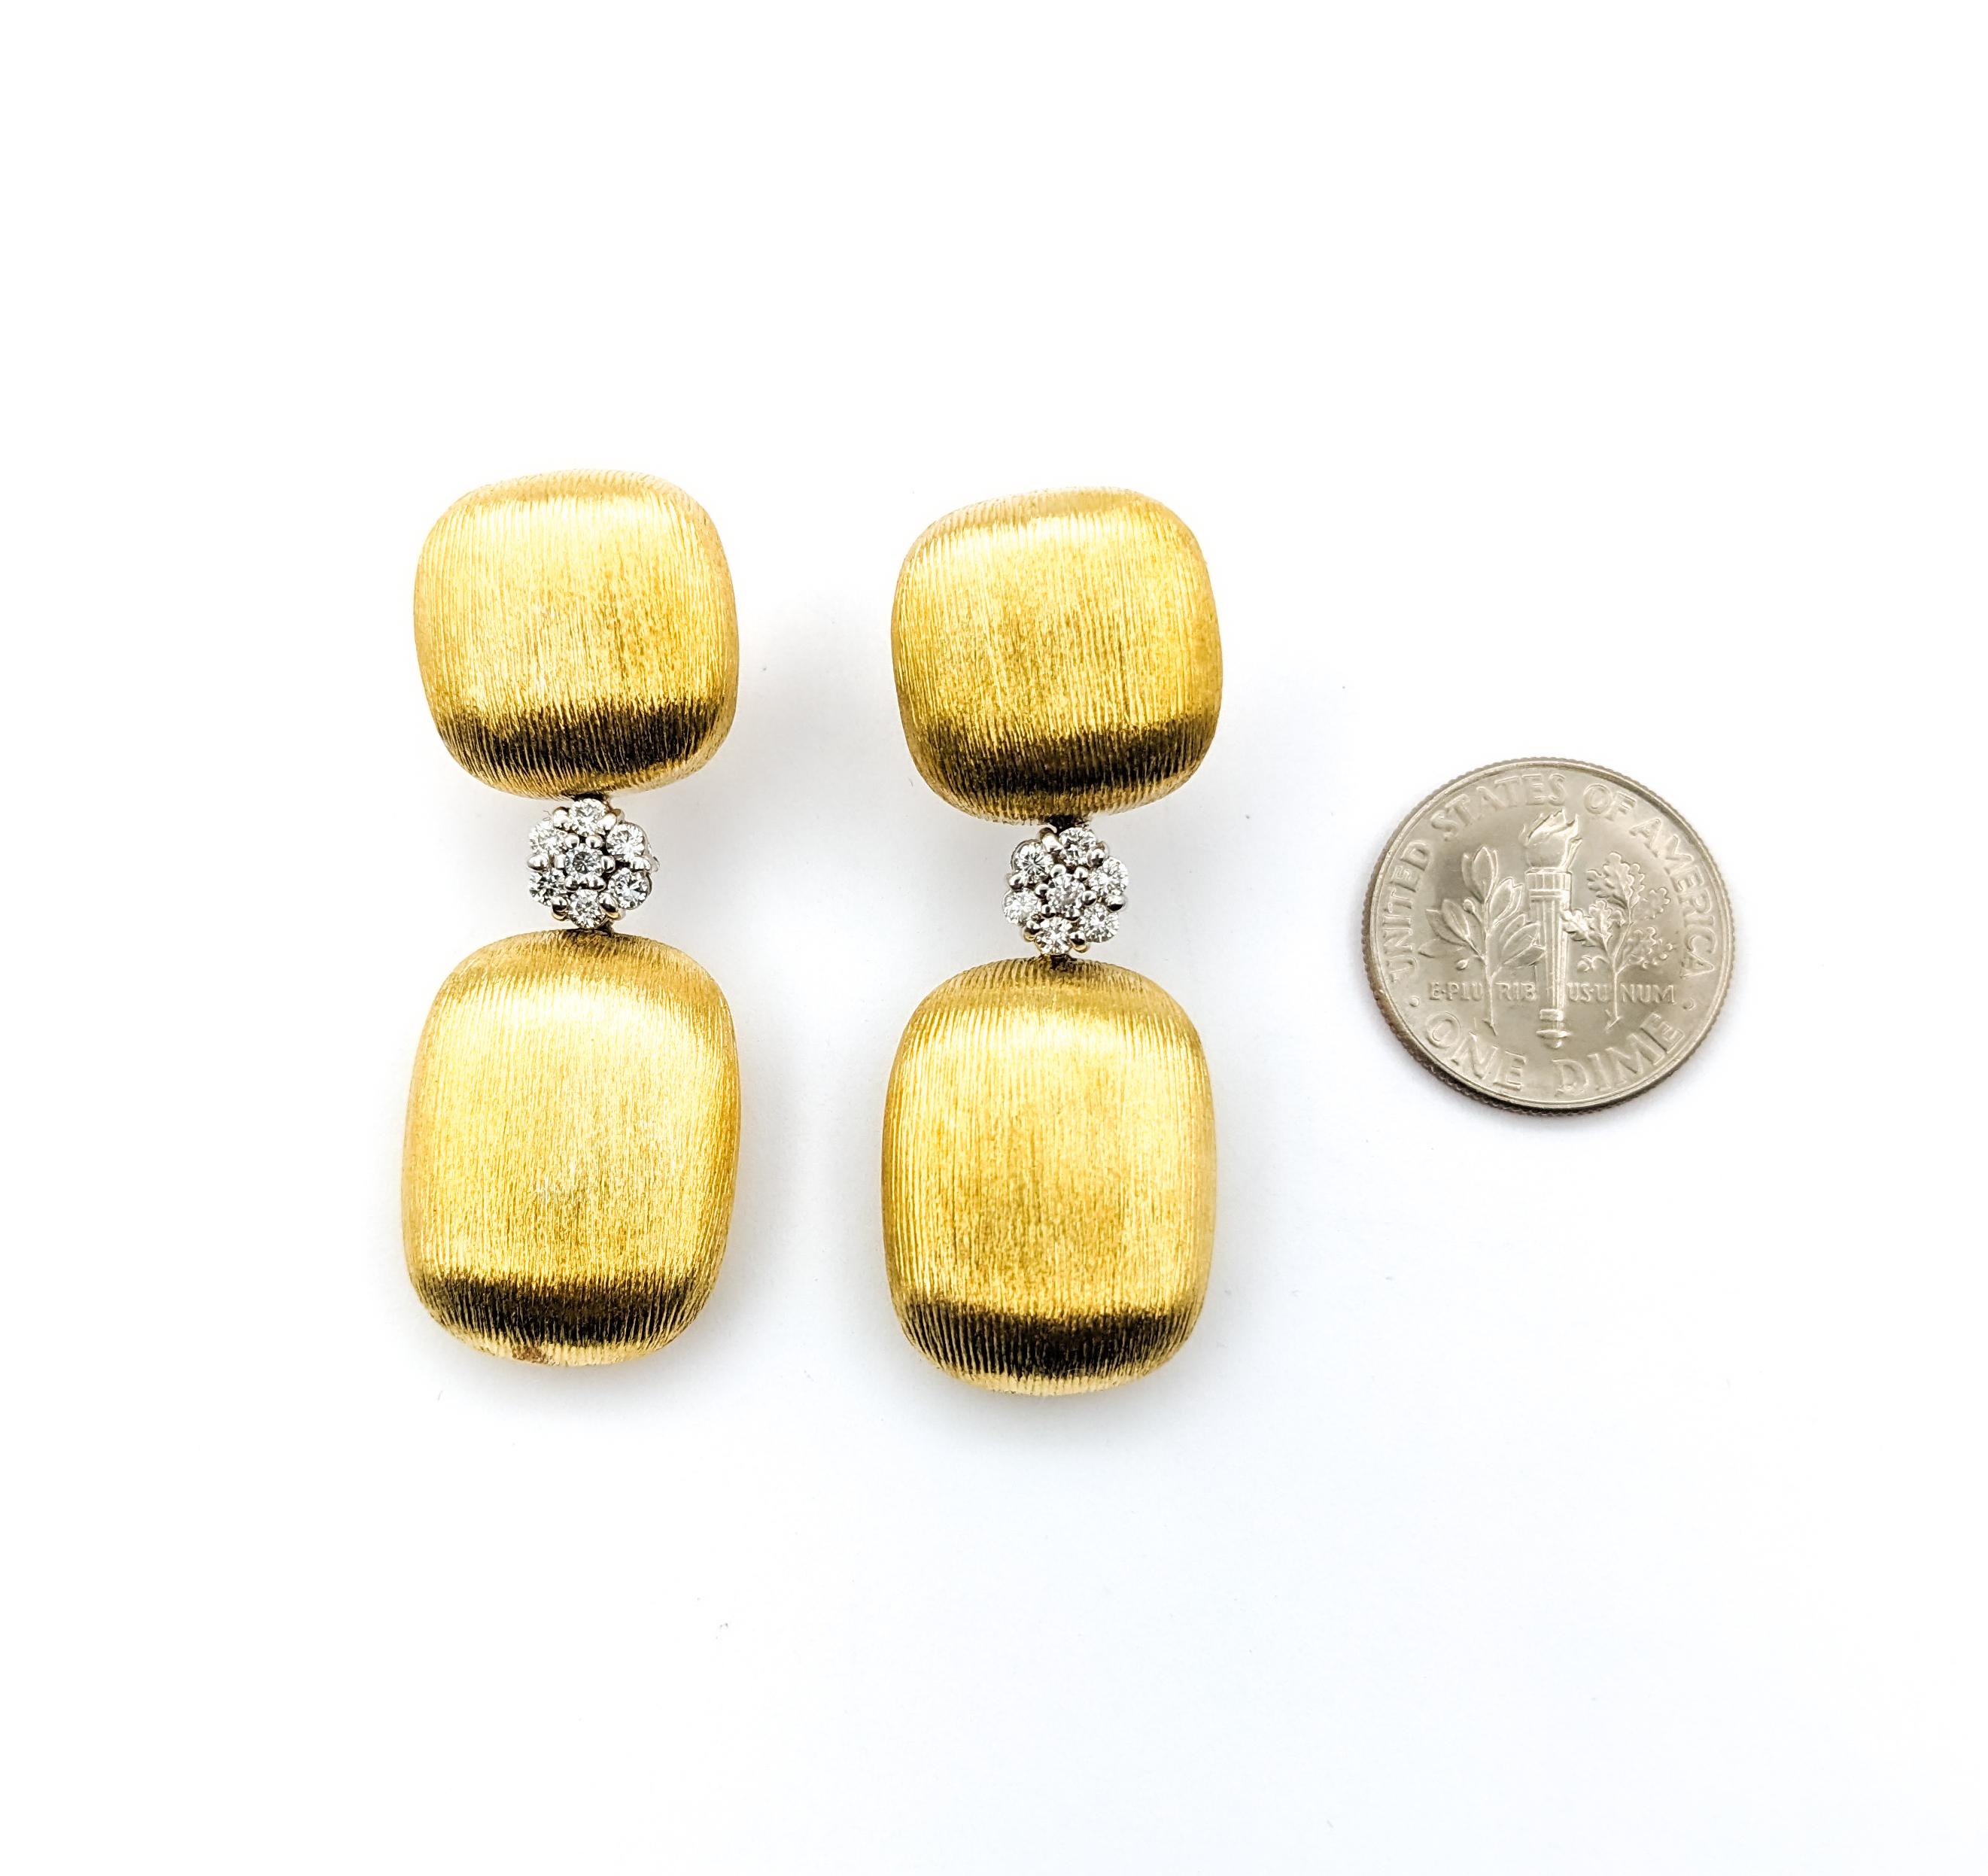 .14ctw Diamant-Baumel-Ohrringe in Gelbgold

Diese exquisiten, handgefertigten Ohrringe aus 18-karätigem Gelbgold sind mit runden, nahezu farblosen Diamanten von SI-Reinheit mit einem Gewicht von 0,14 ct geschmückt. Die von Hand geflornete Oberfläche